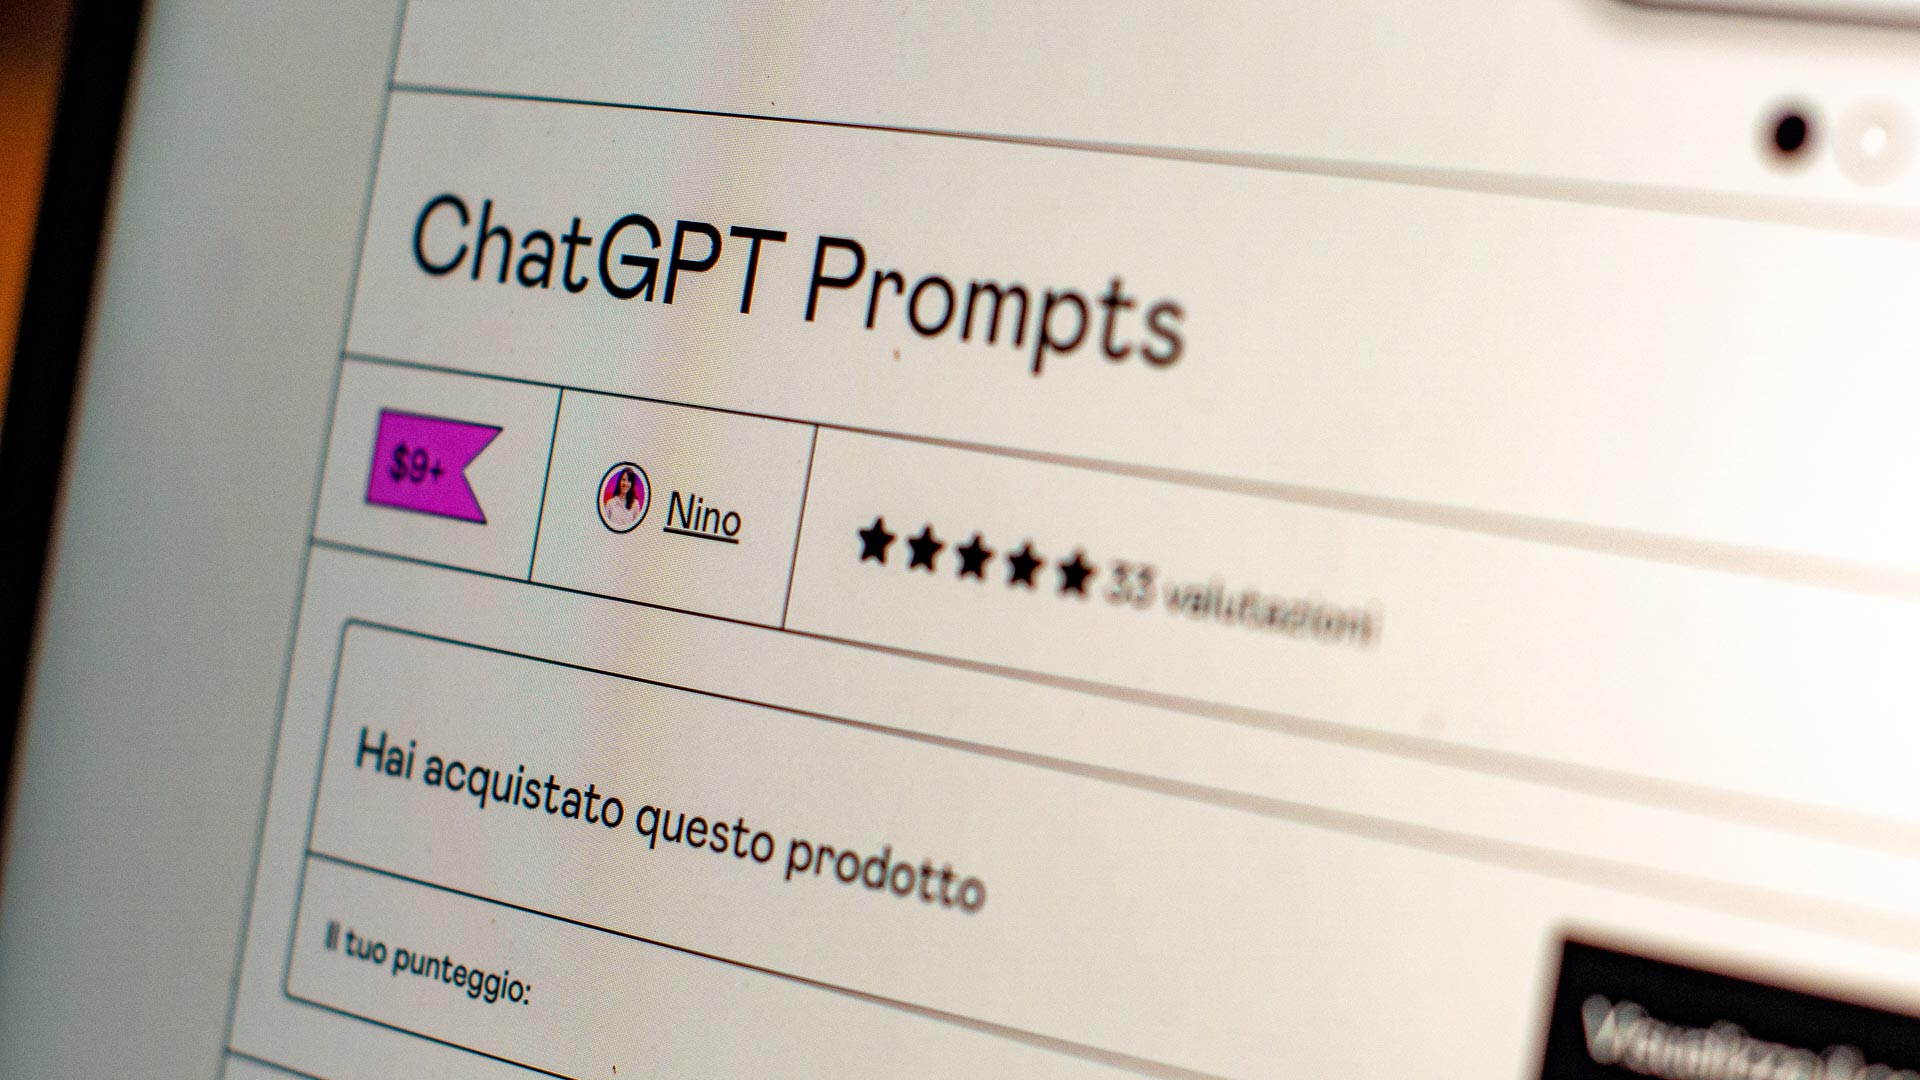 현직 프롬프트 엔지니어의 ChatGPT 프롬프트 작성 팁 3가지